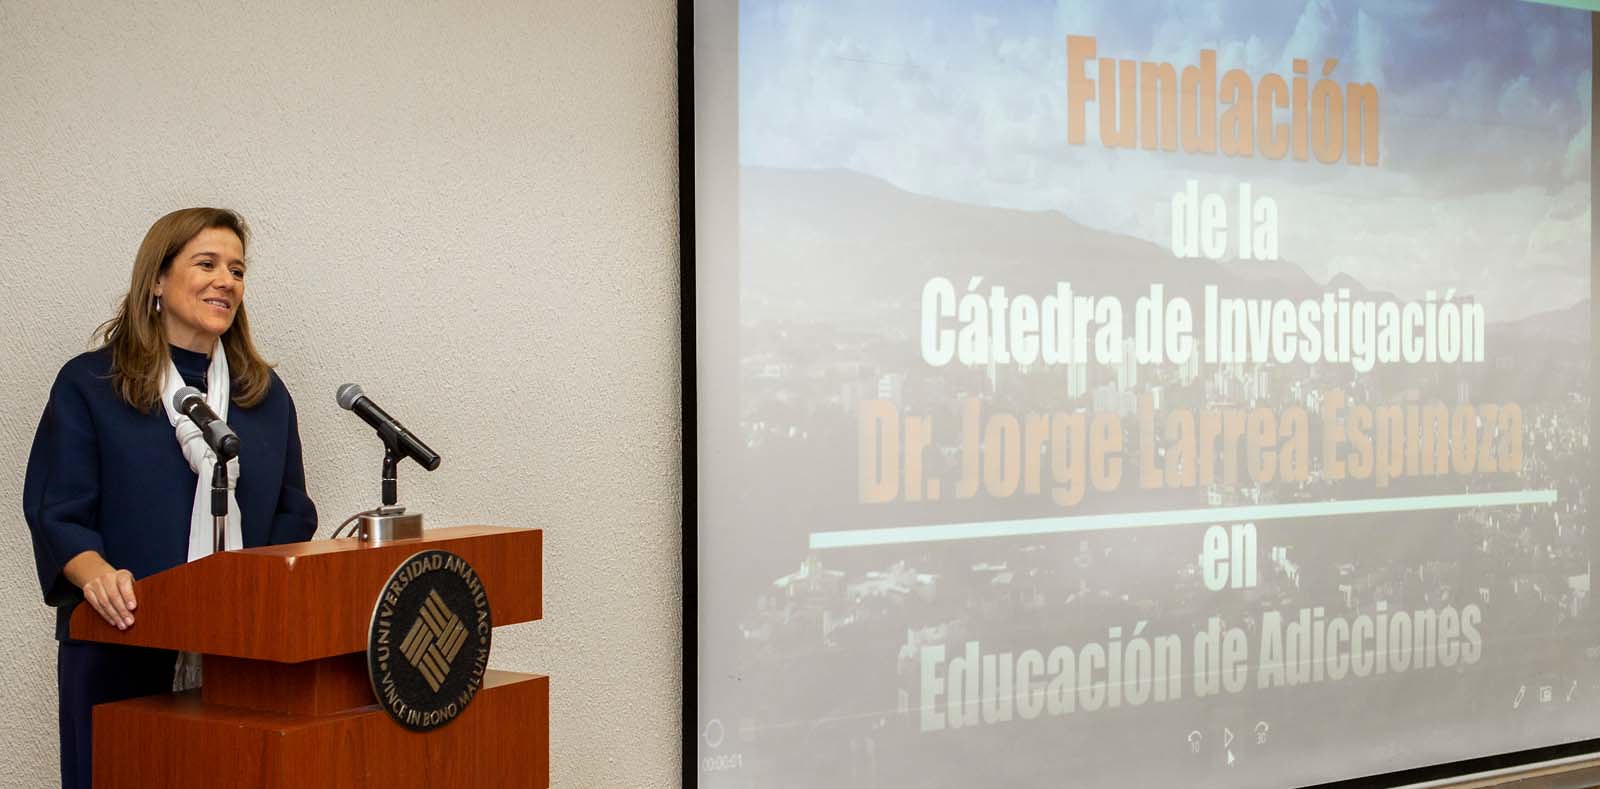 Firma Cátedra de Investigación Dr. Jorge Larrea Espinosa en Educación en Adicciones